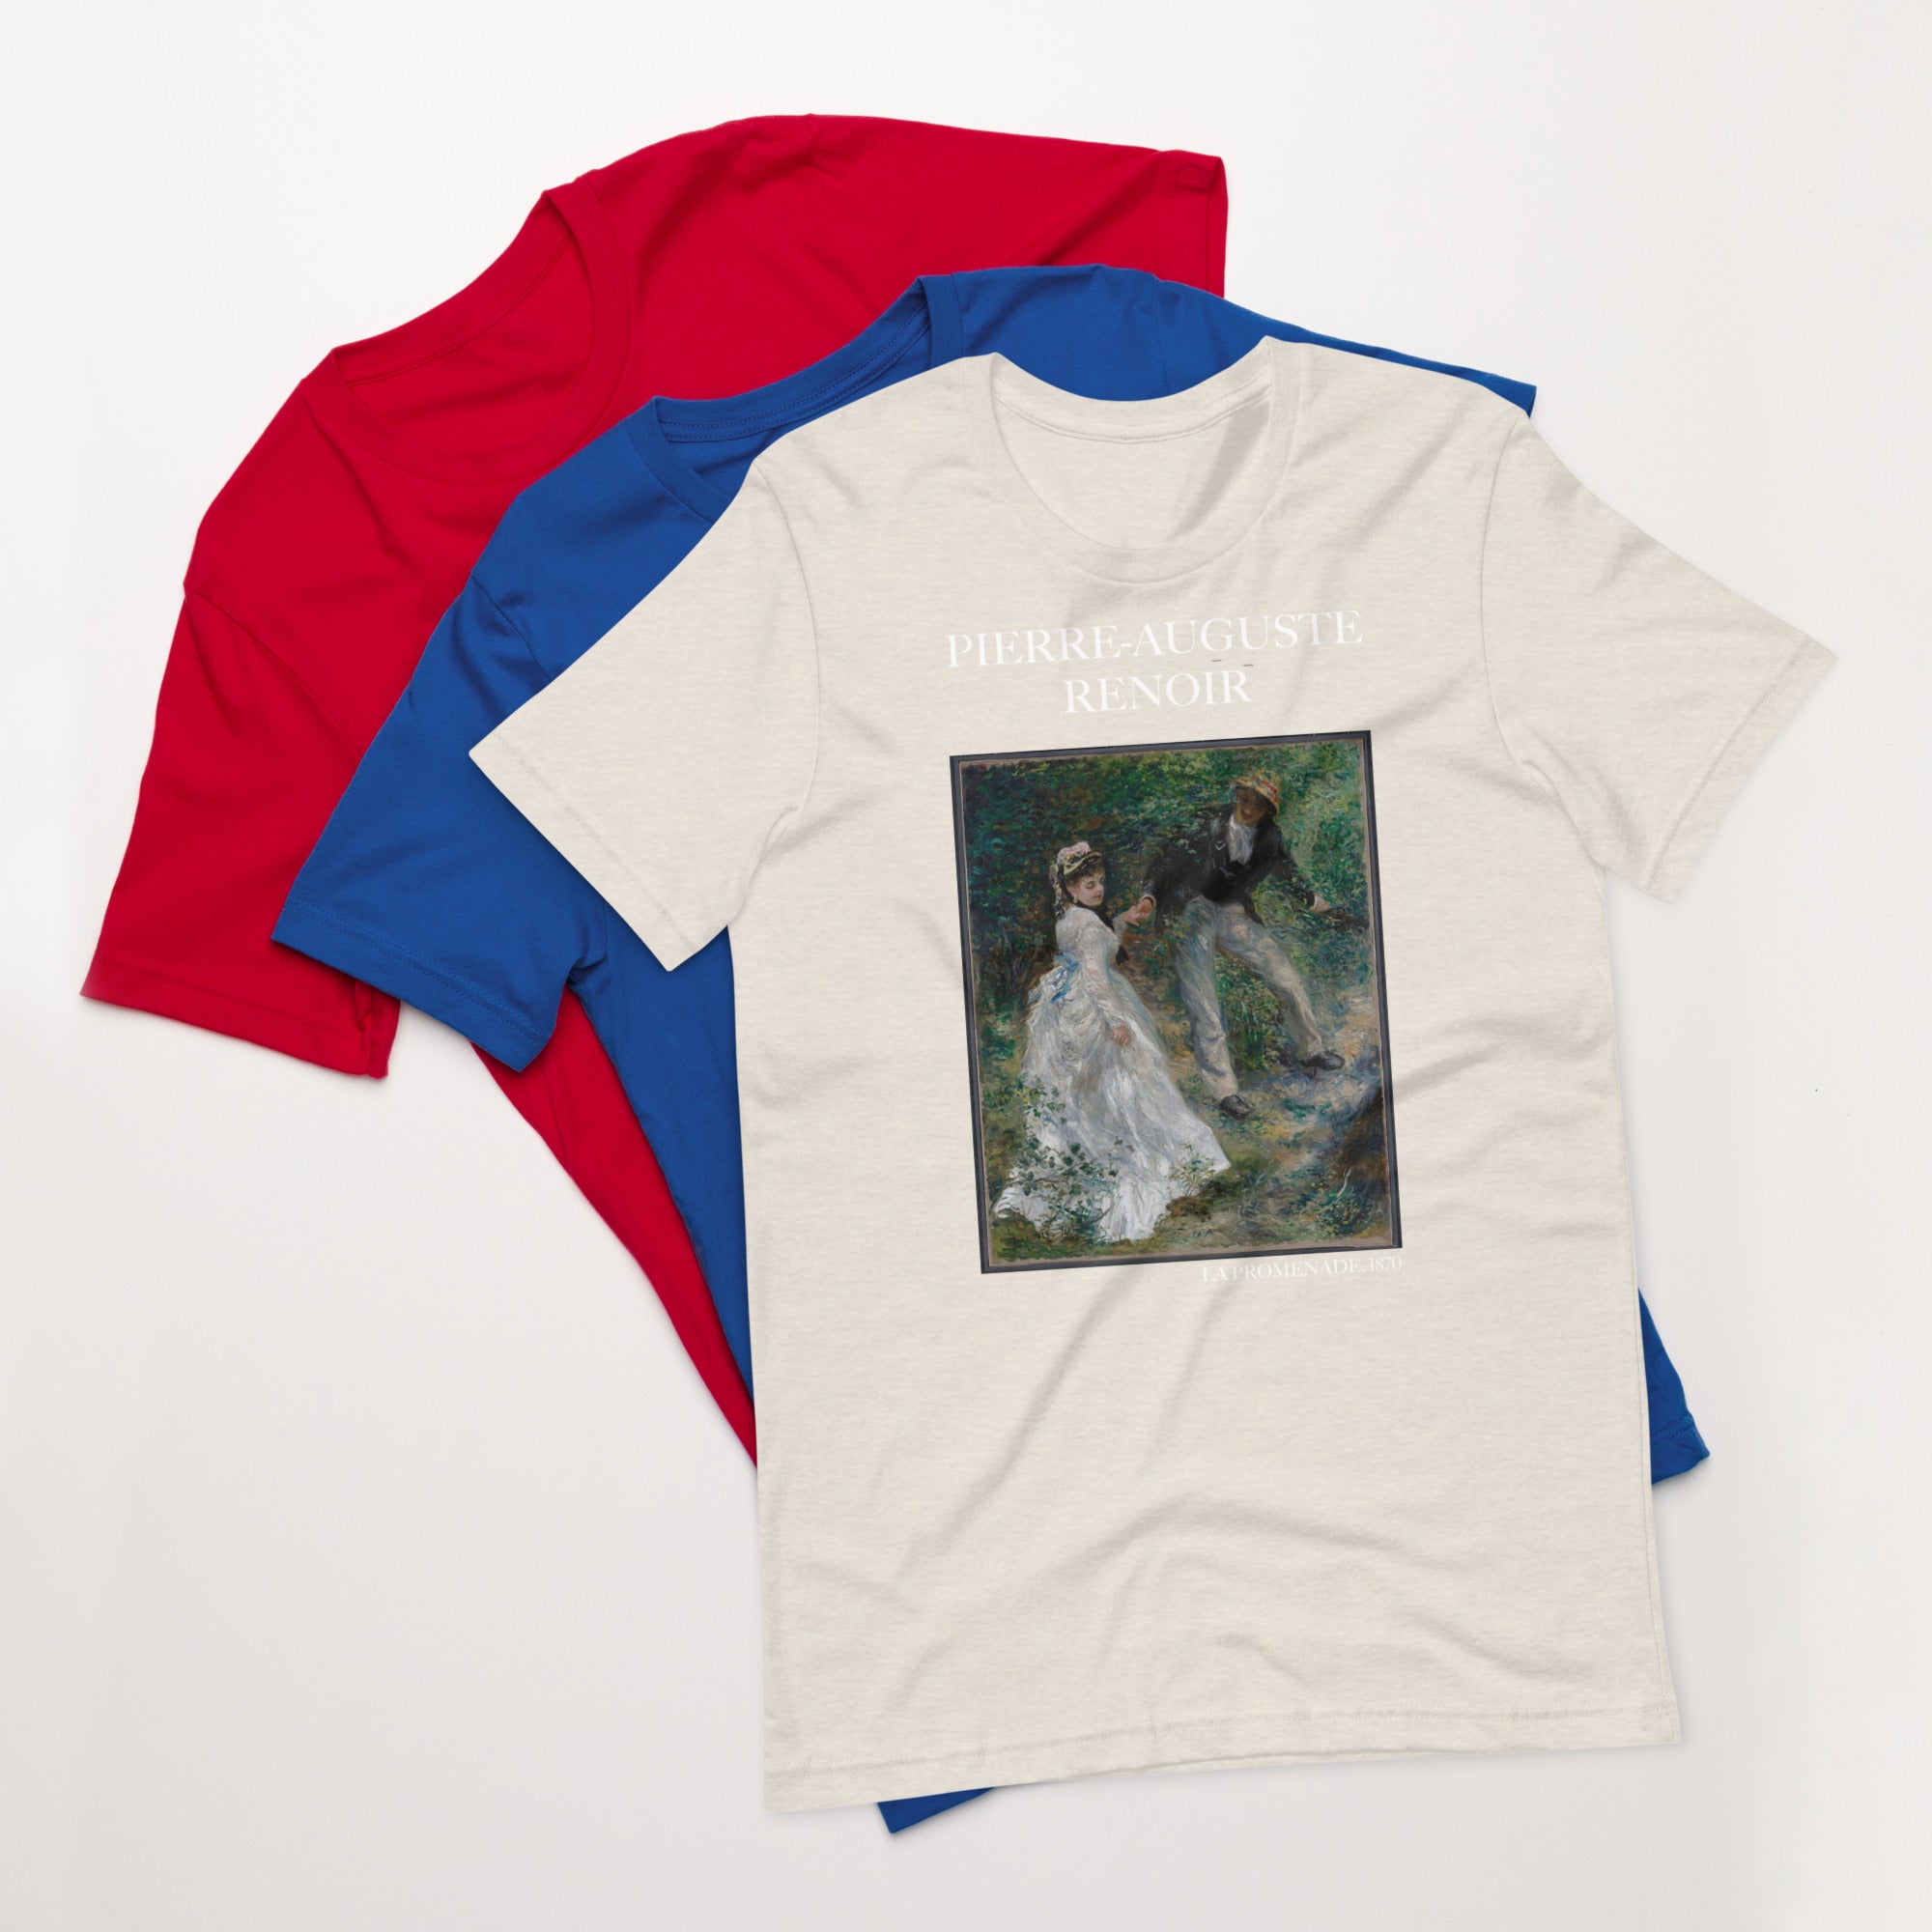 Pierre-Auguste Renoir 'La Promenade' Famous Painting T-Shirt | Unisex Classic Art Tee